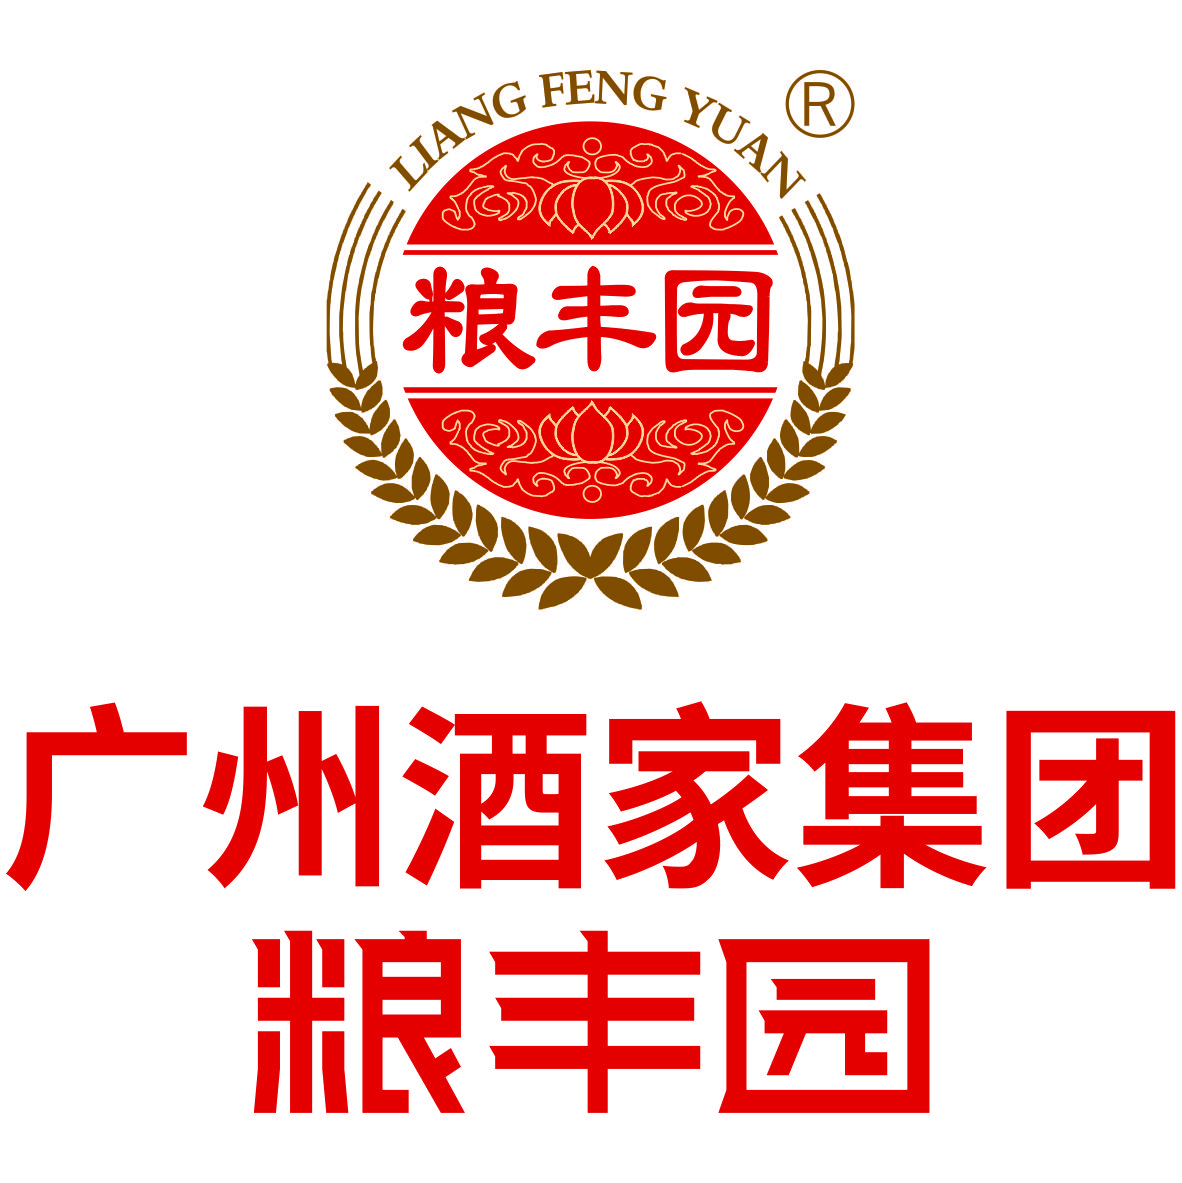 Guangzhou Restaurant Group Liang Feng Yuan( Maoming )Food Co., Ltd.